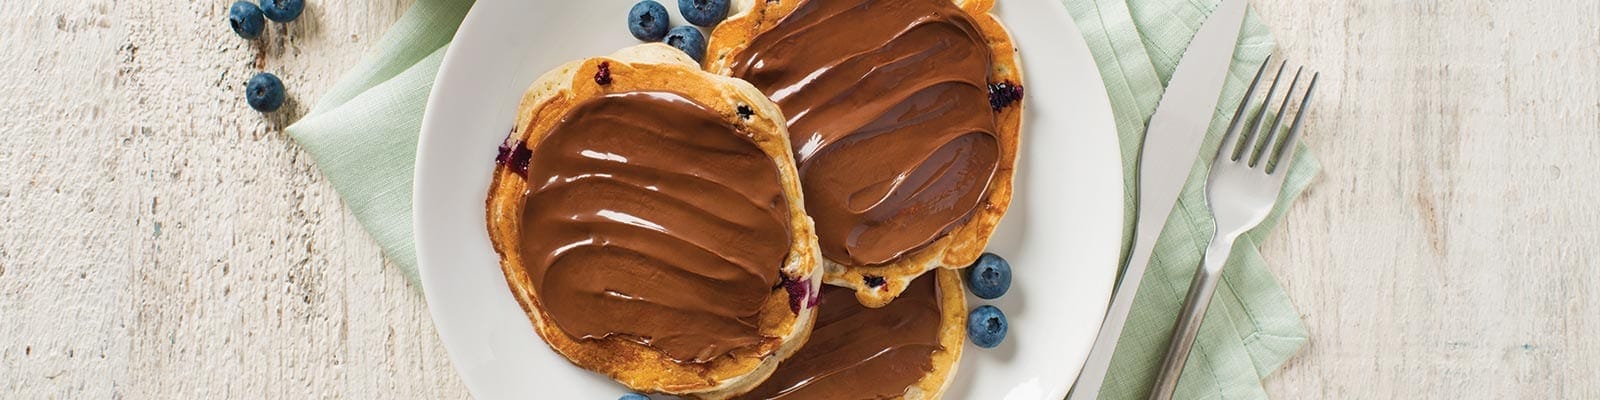 Pancakes au yaourt et aux fruits rouges avec de la pâte à tartiner aux noisettes Nutella®